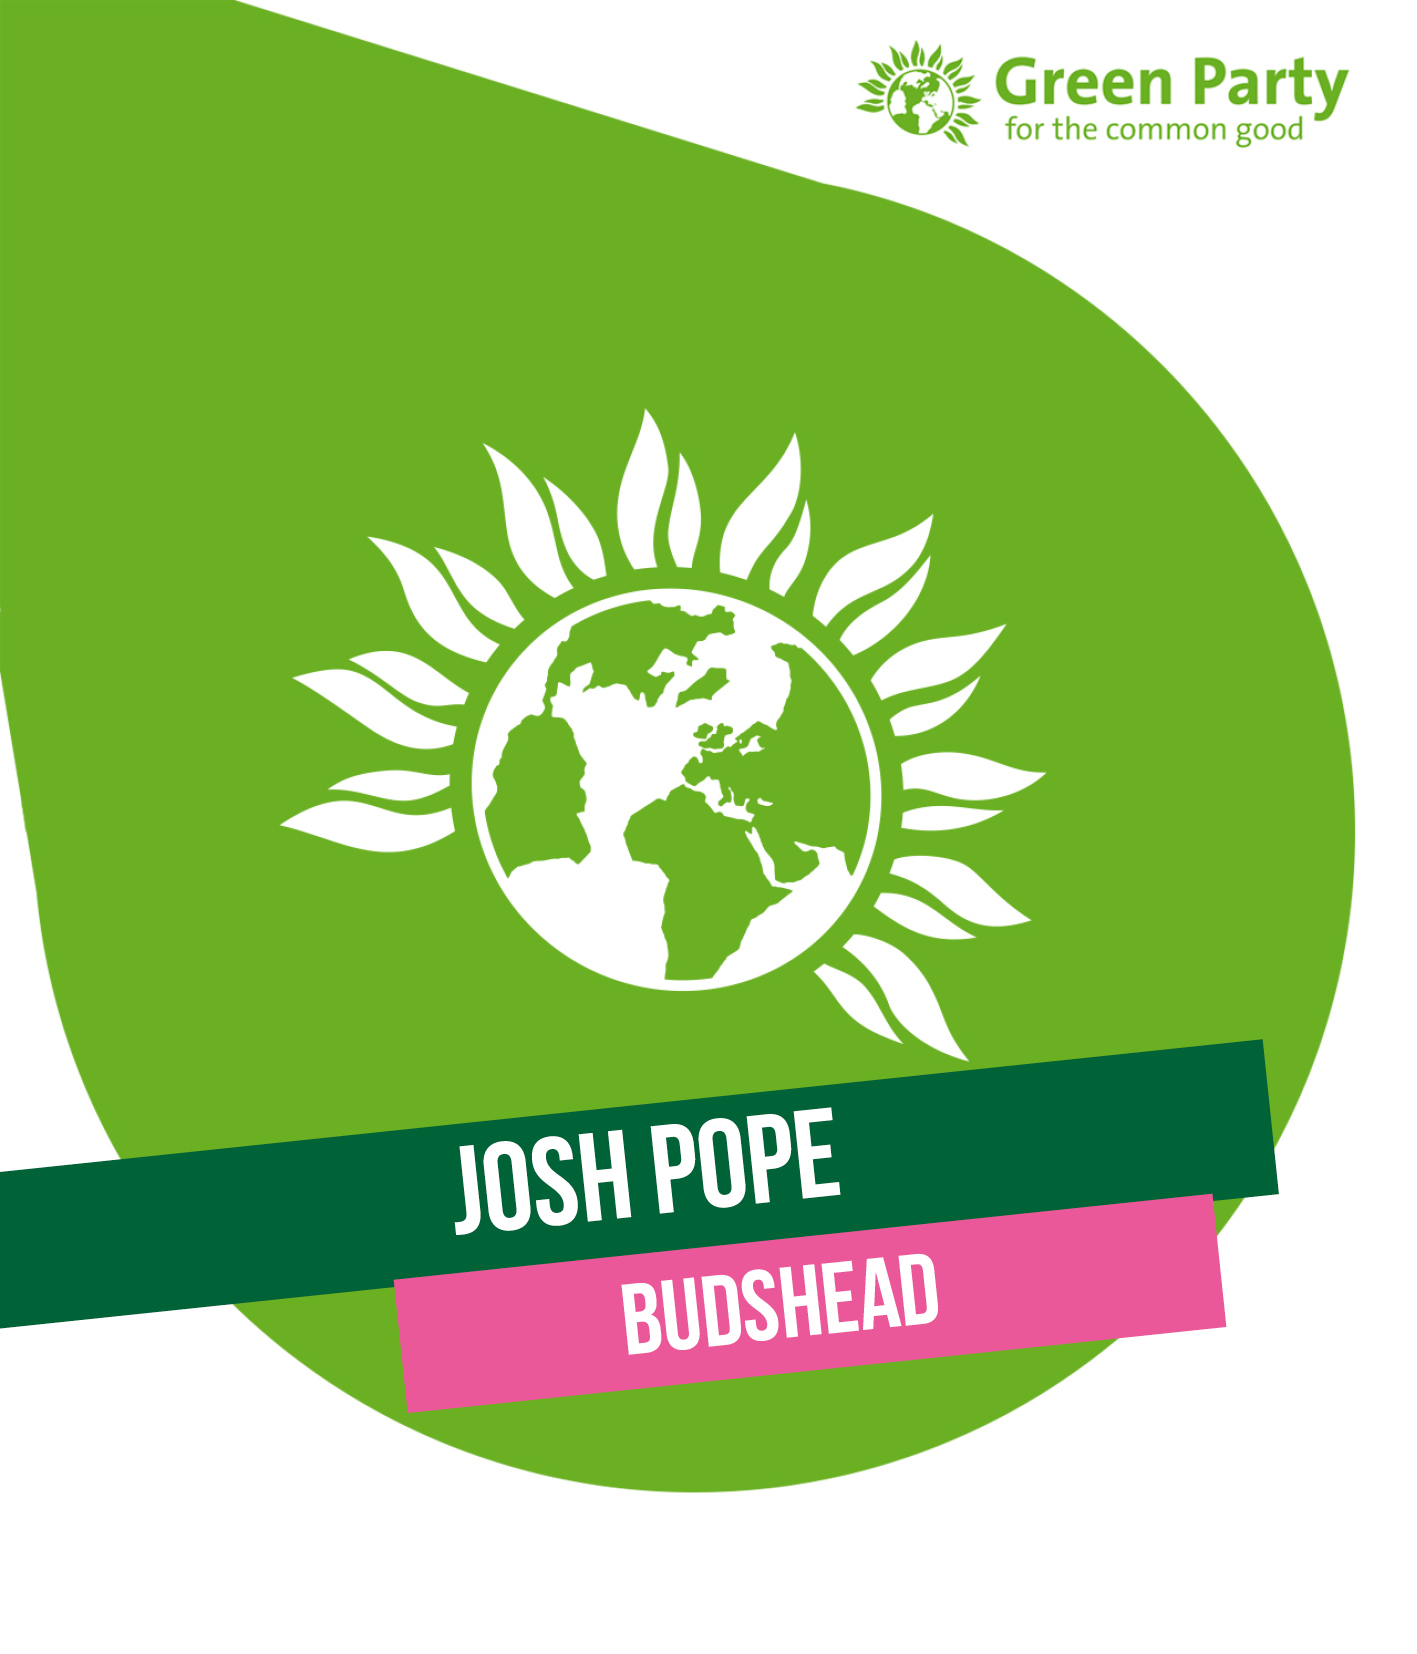 Josh Pope